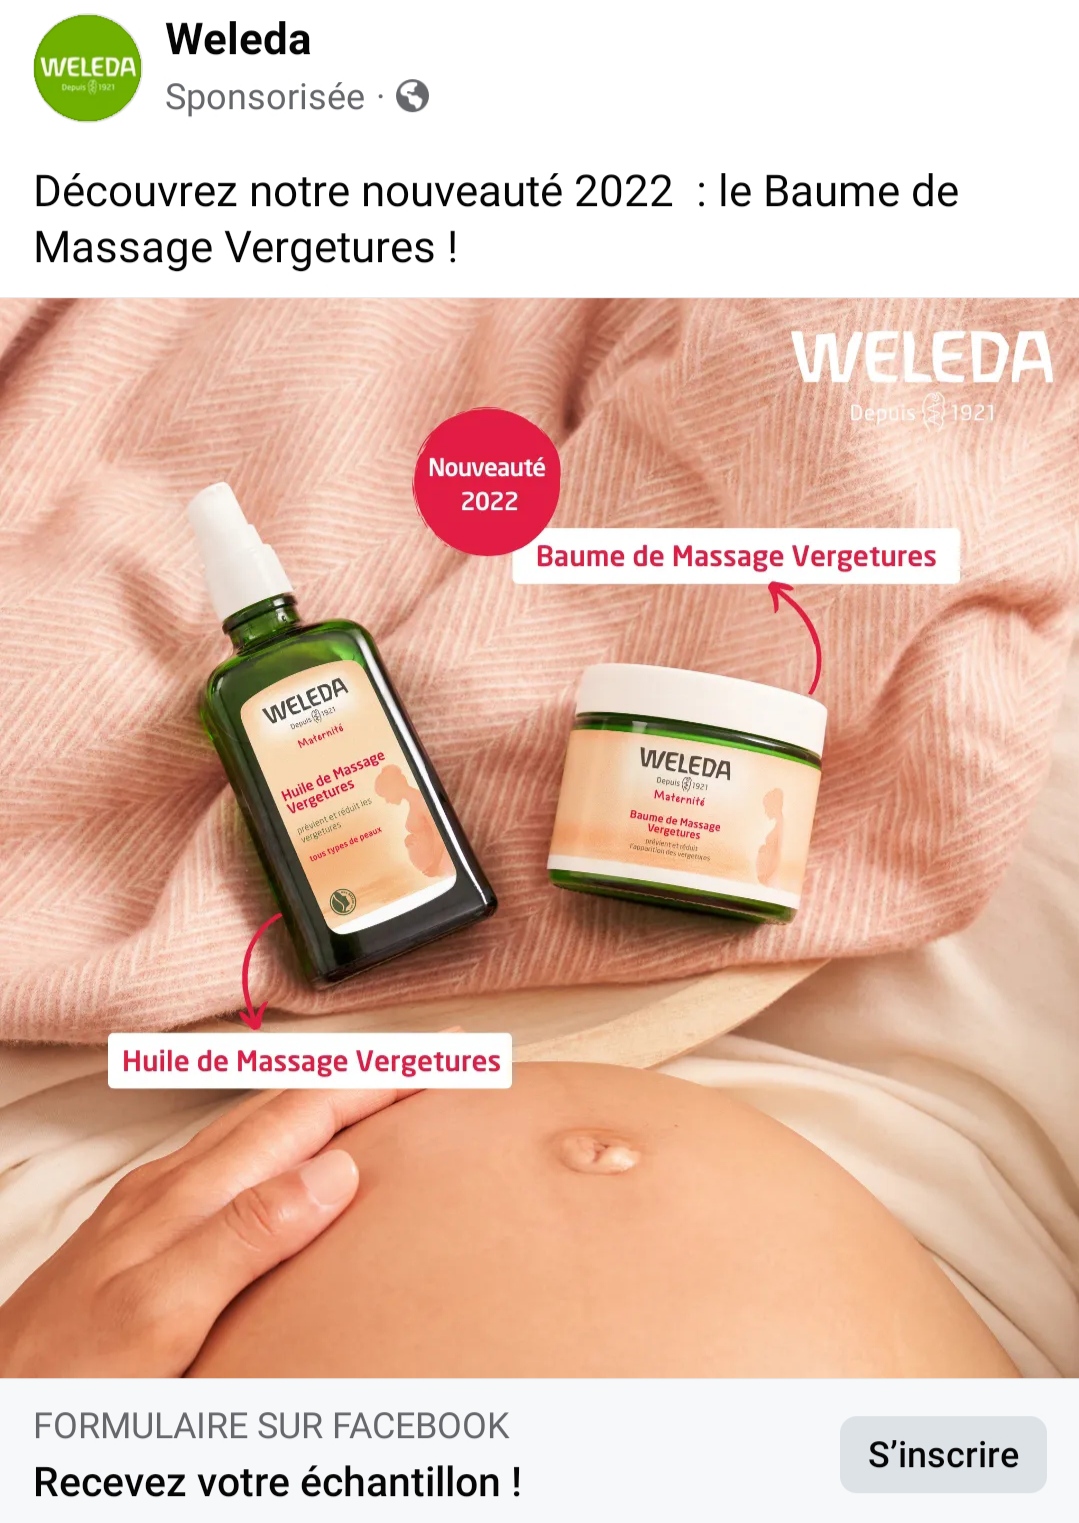 Huile de Massage Vergetures - Weleda